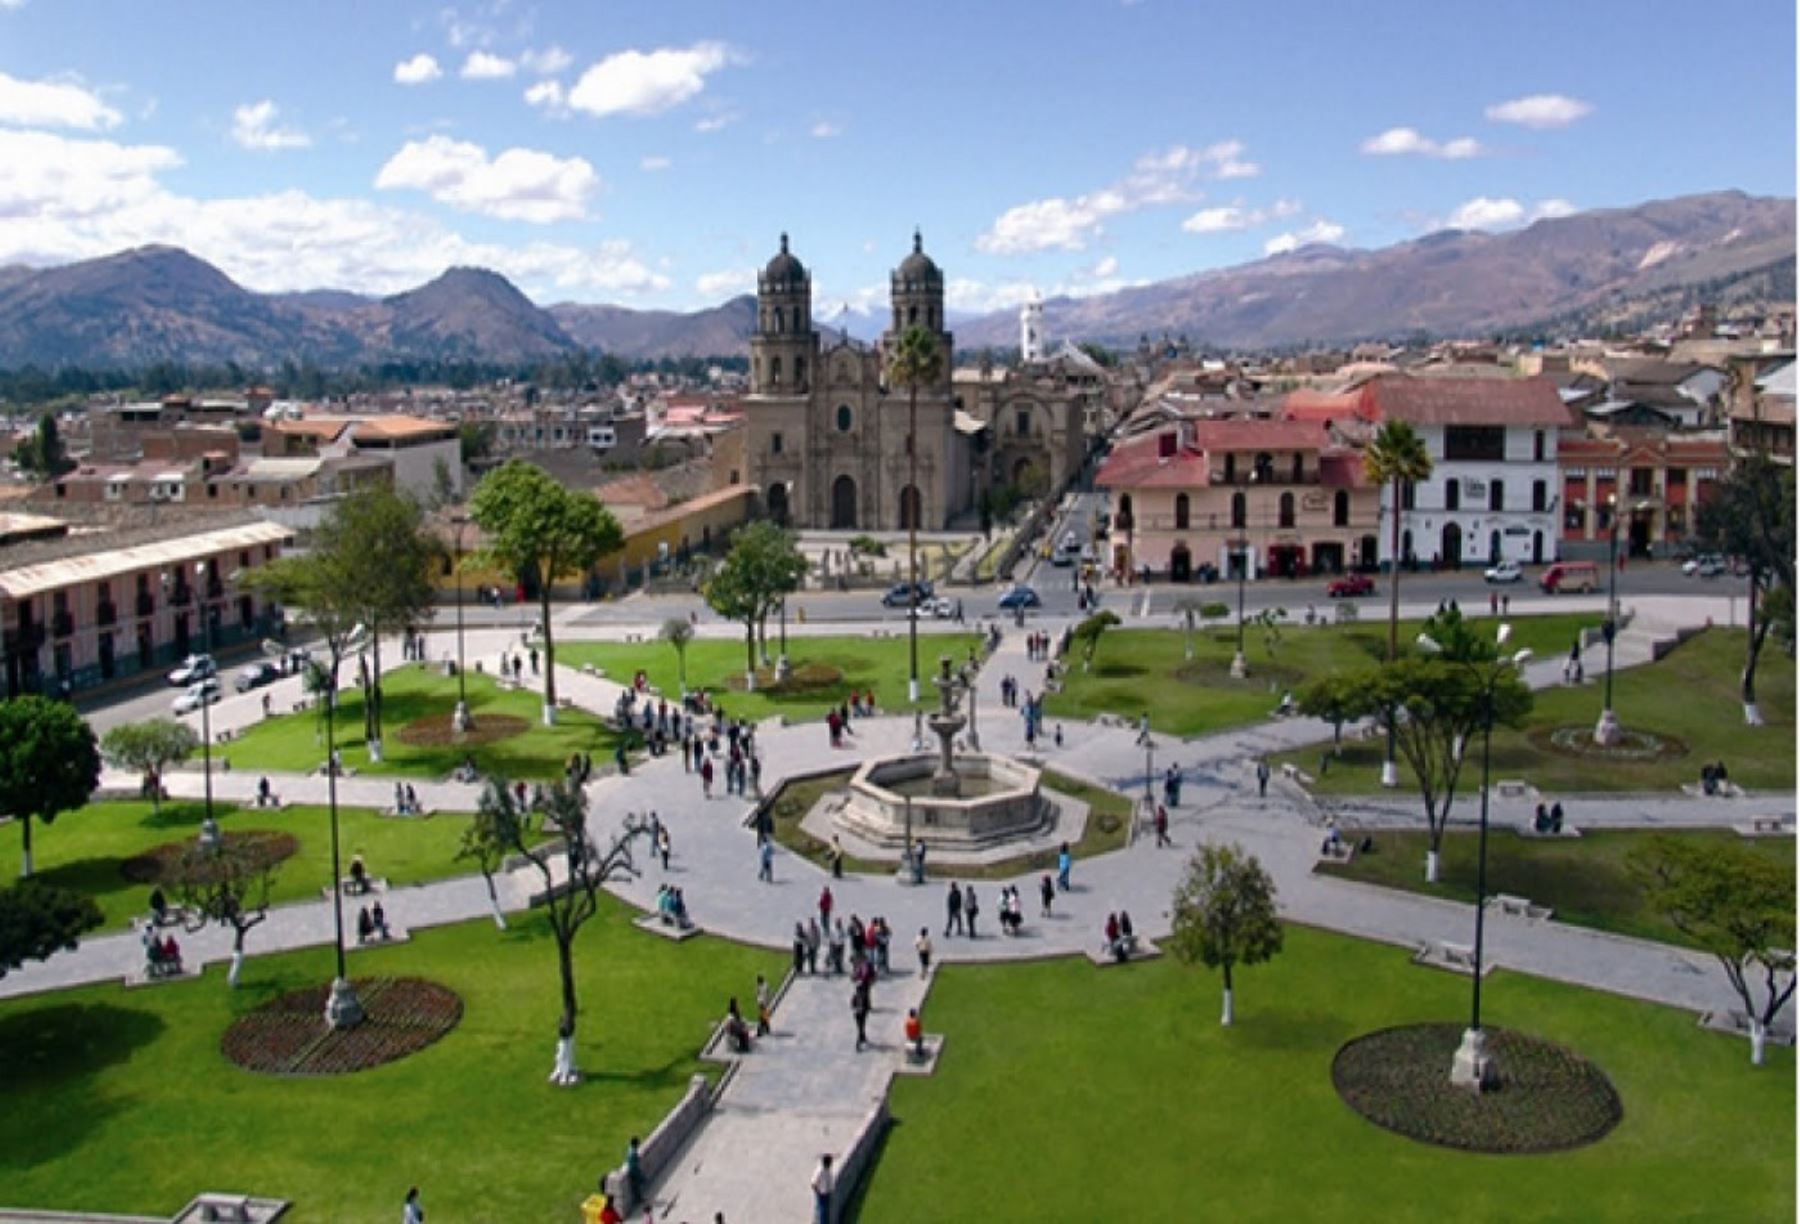 La ciudad de Cajamarca fue elegida como uno de los mejores 18 destinos del planeta para visitar este año por la cadena de noticias CNN de los Estados Unidos, que destaca su cultura expresada en la belleza arquitectónica de las edificaciones incaicas e iglesias católicas de estilo barroco, así como sus espectaculares paisajes andinos.